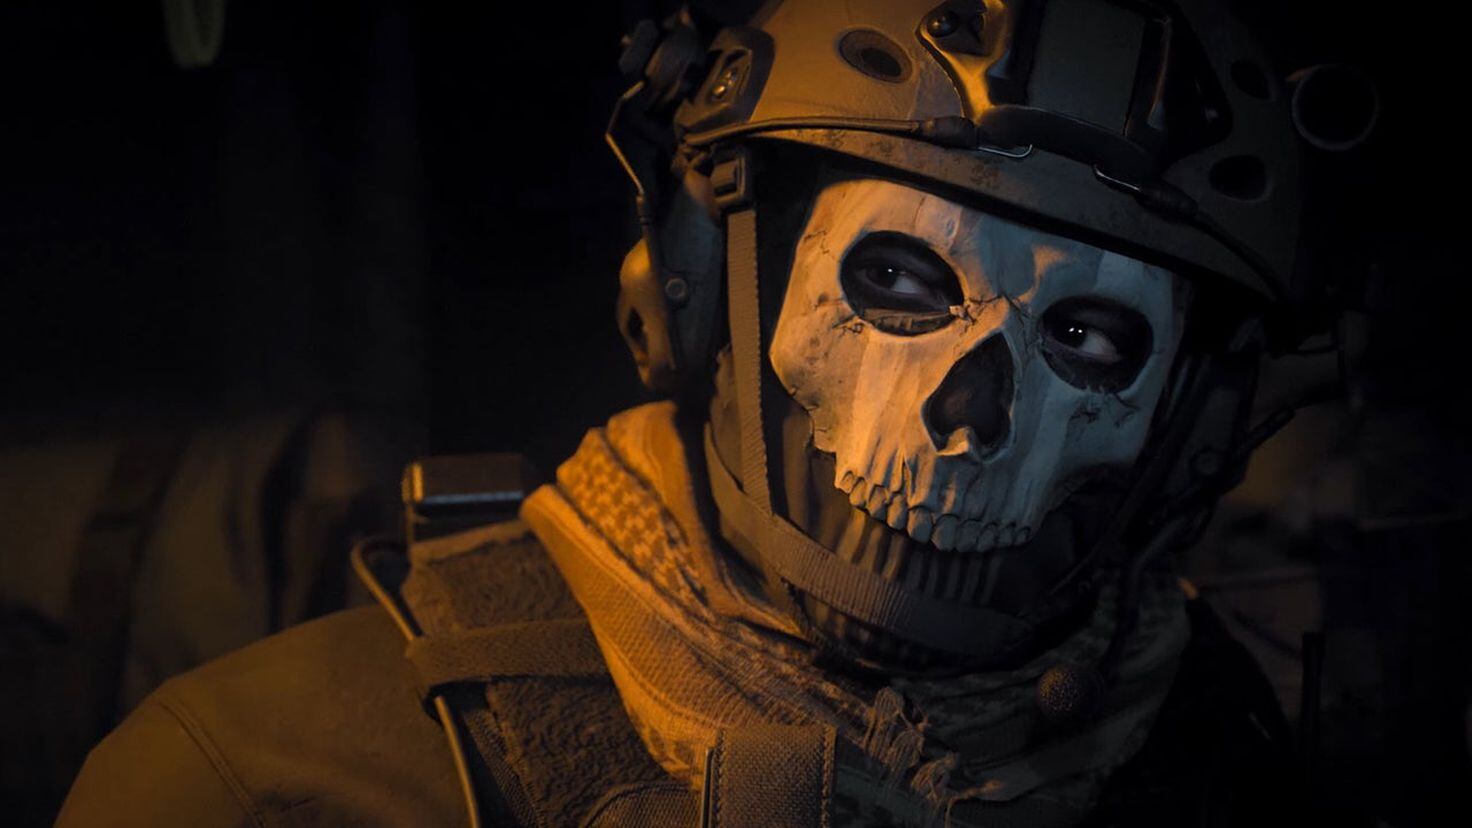 Modern Warfare 2019 Ghost Mask